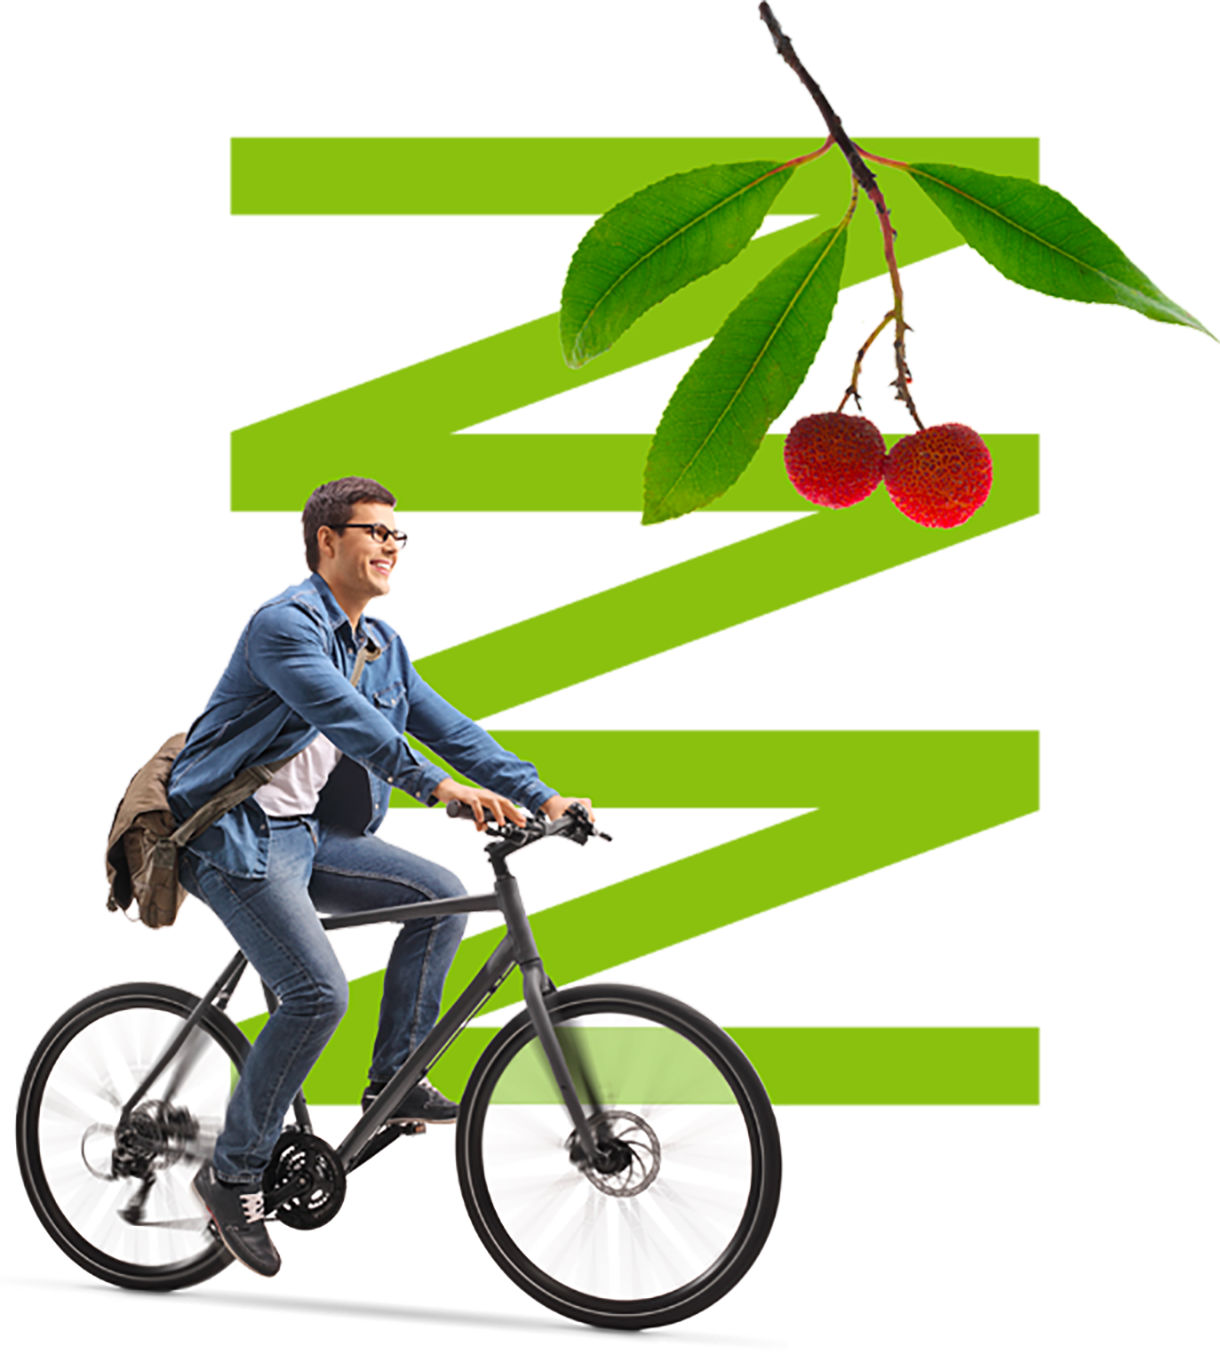 Ilustración decorativa junto a una persona en bicicleta